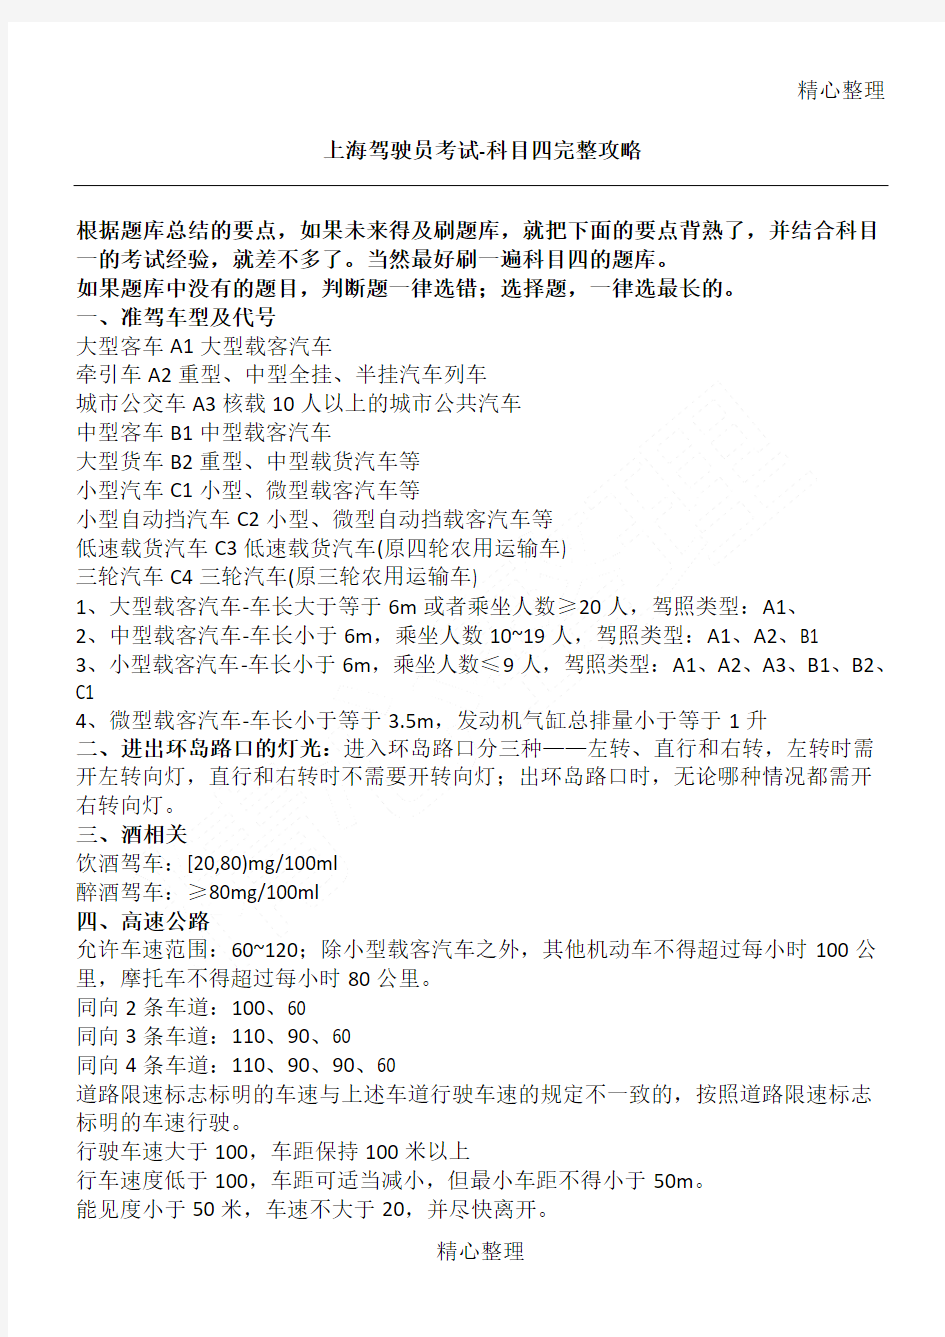 上海驾驶员考试科目四完整总结归纳